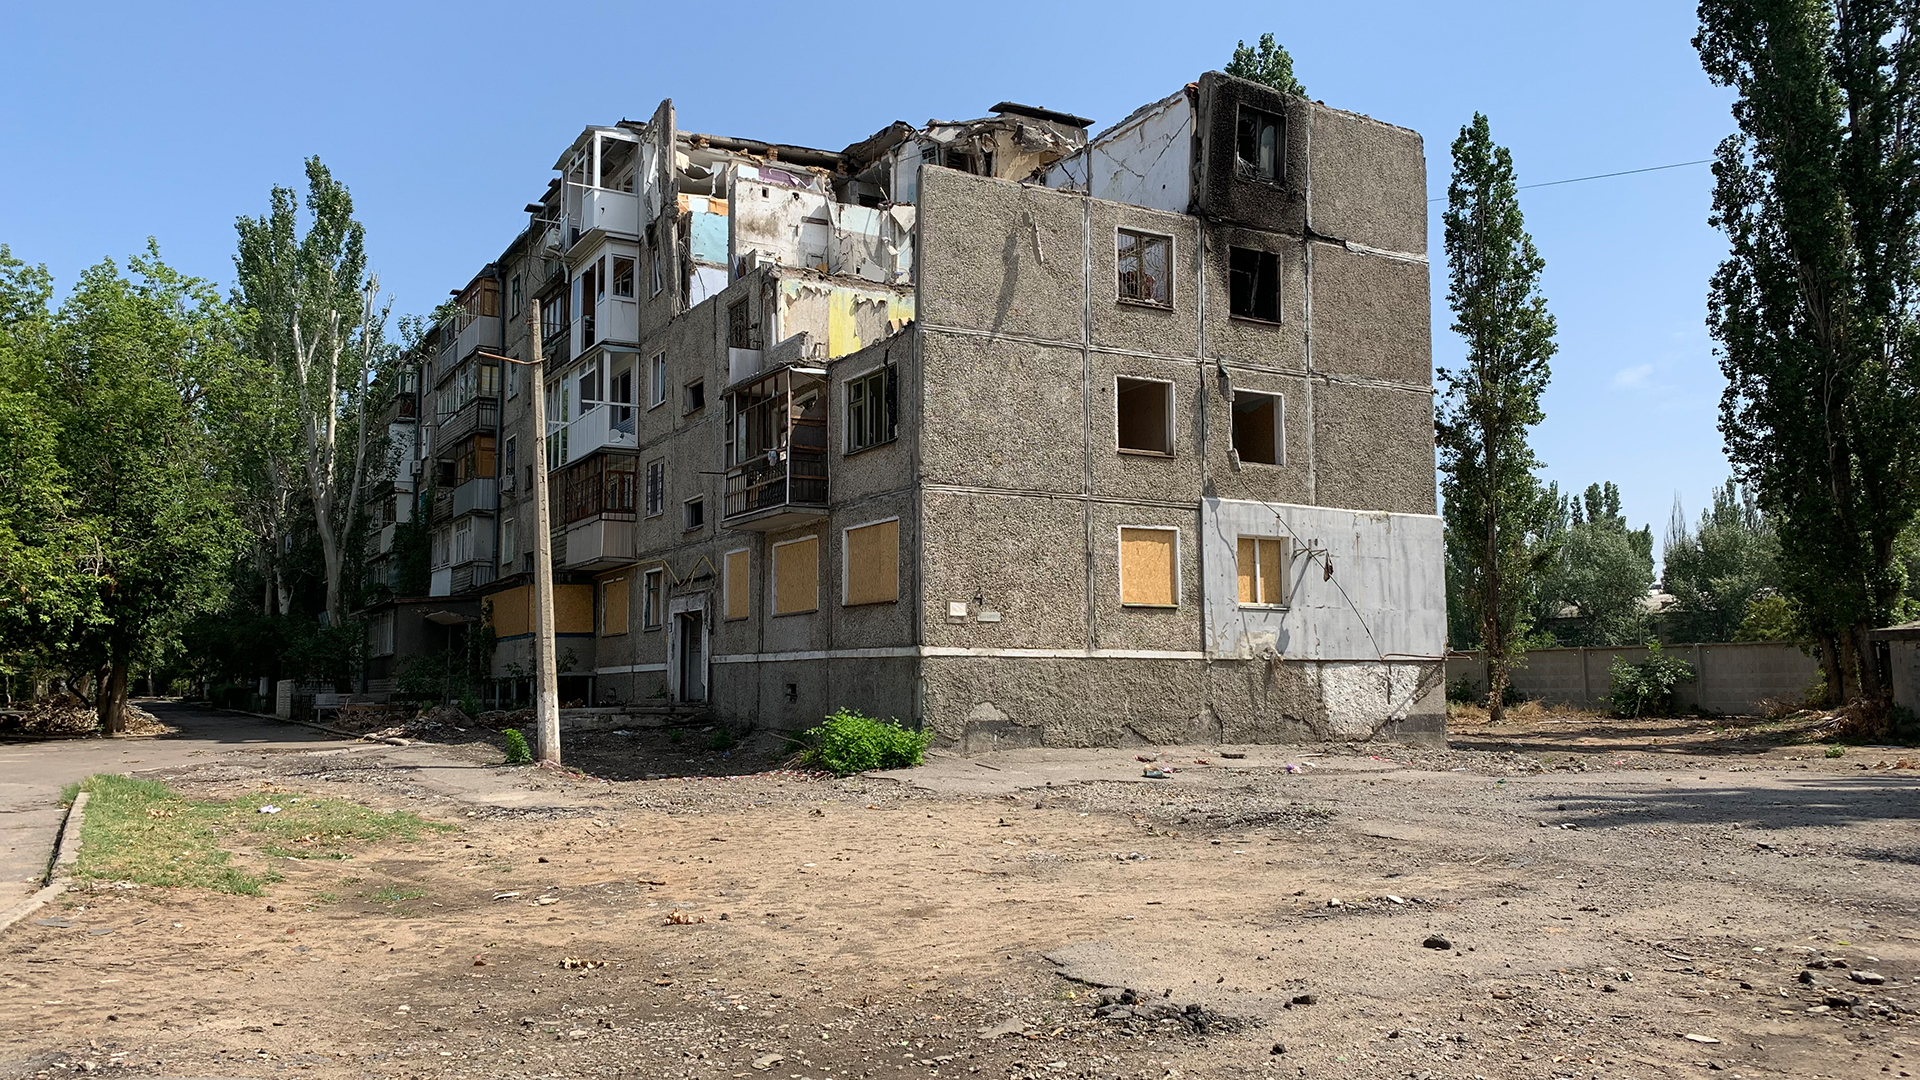 In dieses Wohnhaus in Mykolajiw schlug eine russische Rakete. | Andrea Beer, WDR